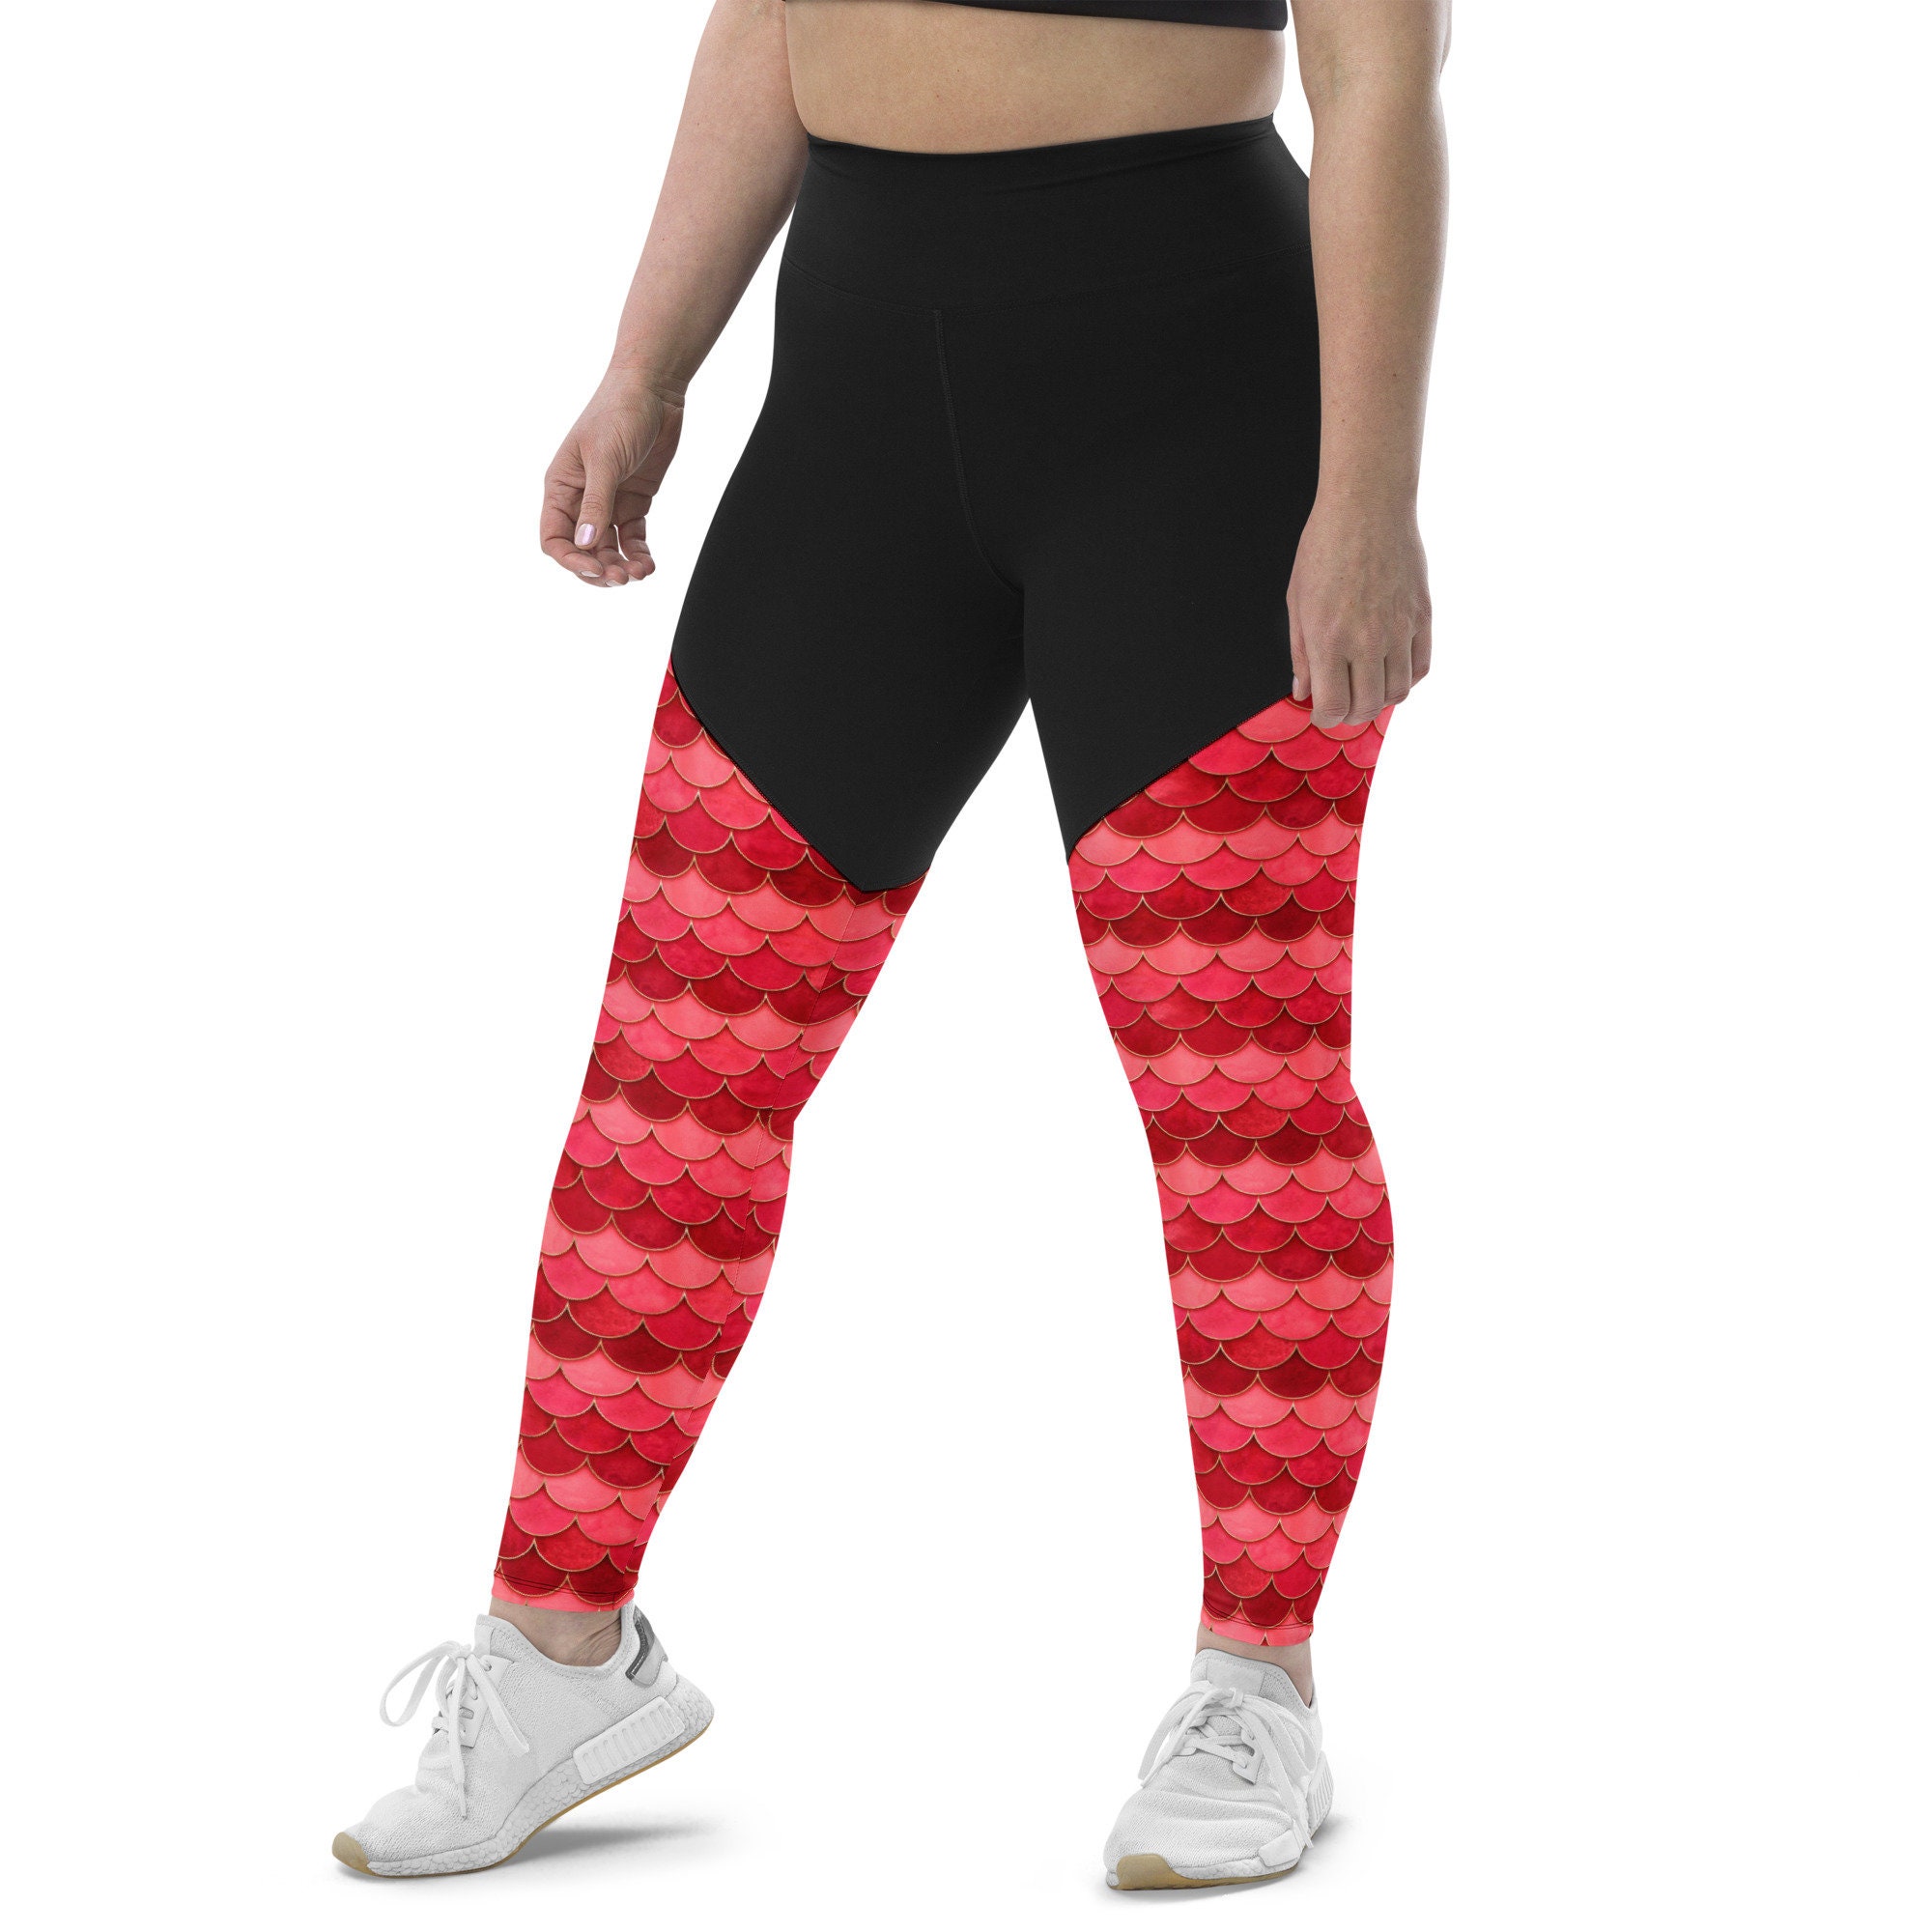 Plus Size Leggings, Champagne Bottle Print Printed Workout Running  Bachelorette Designer Fun Party Yoga Pants, 2XL 3XL 4XL 5XL 6XL for Women 